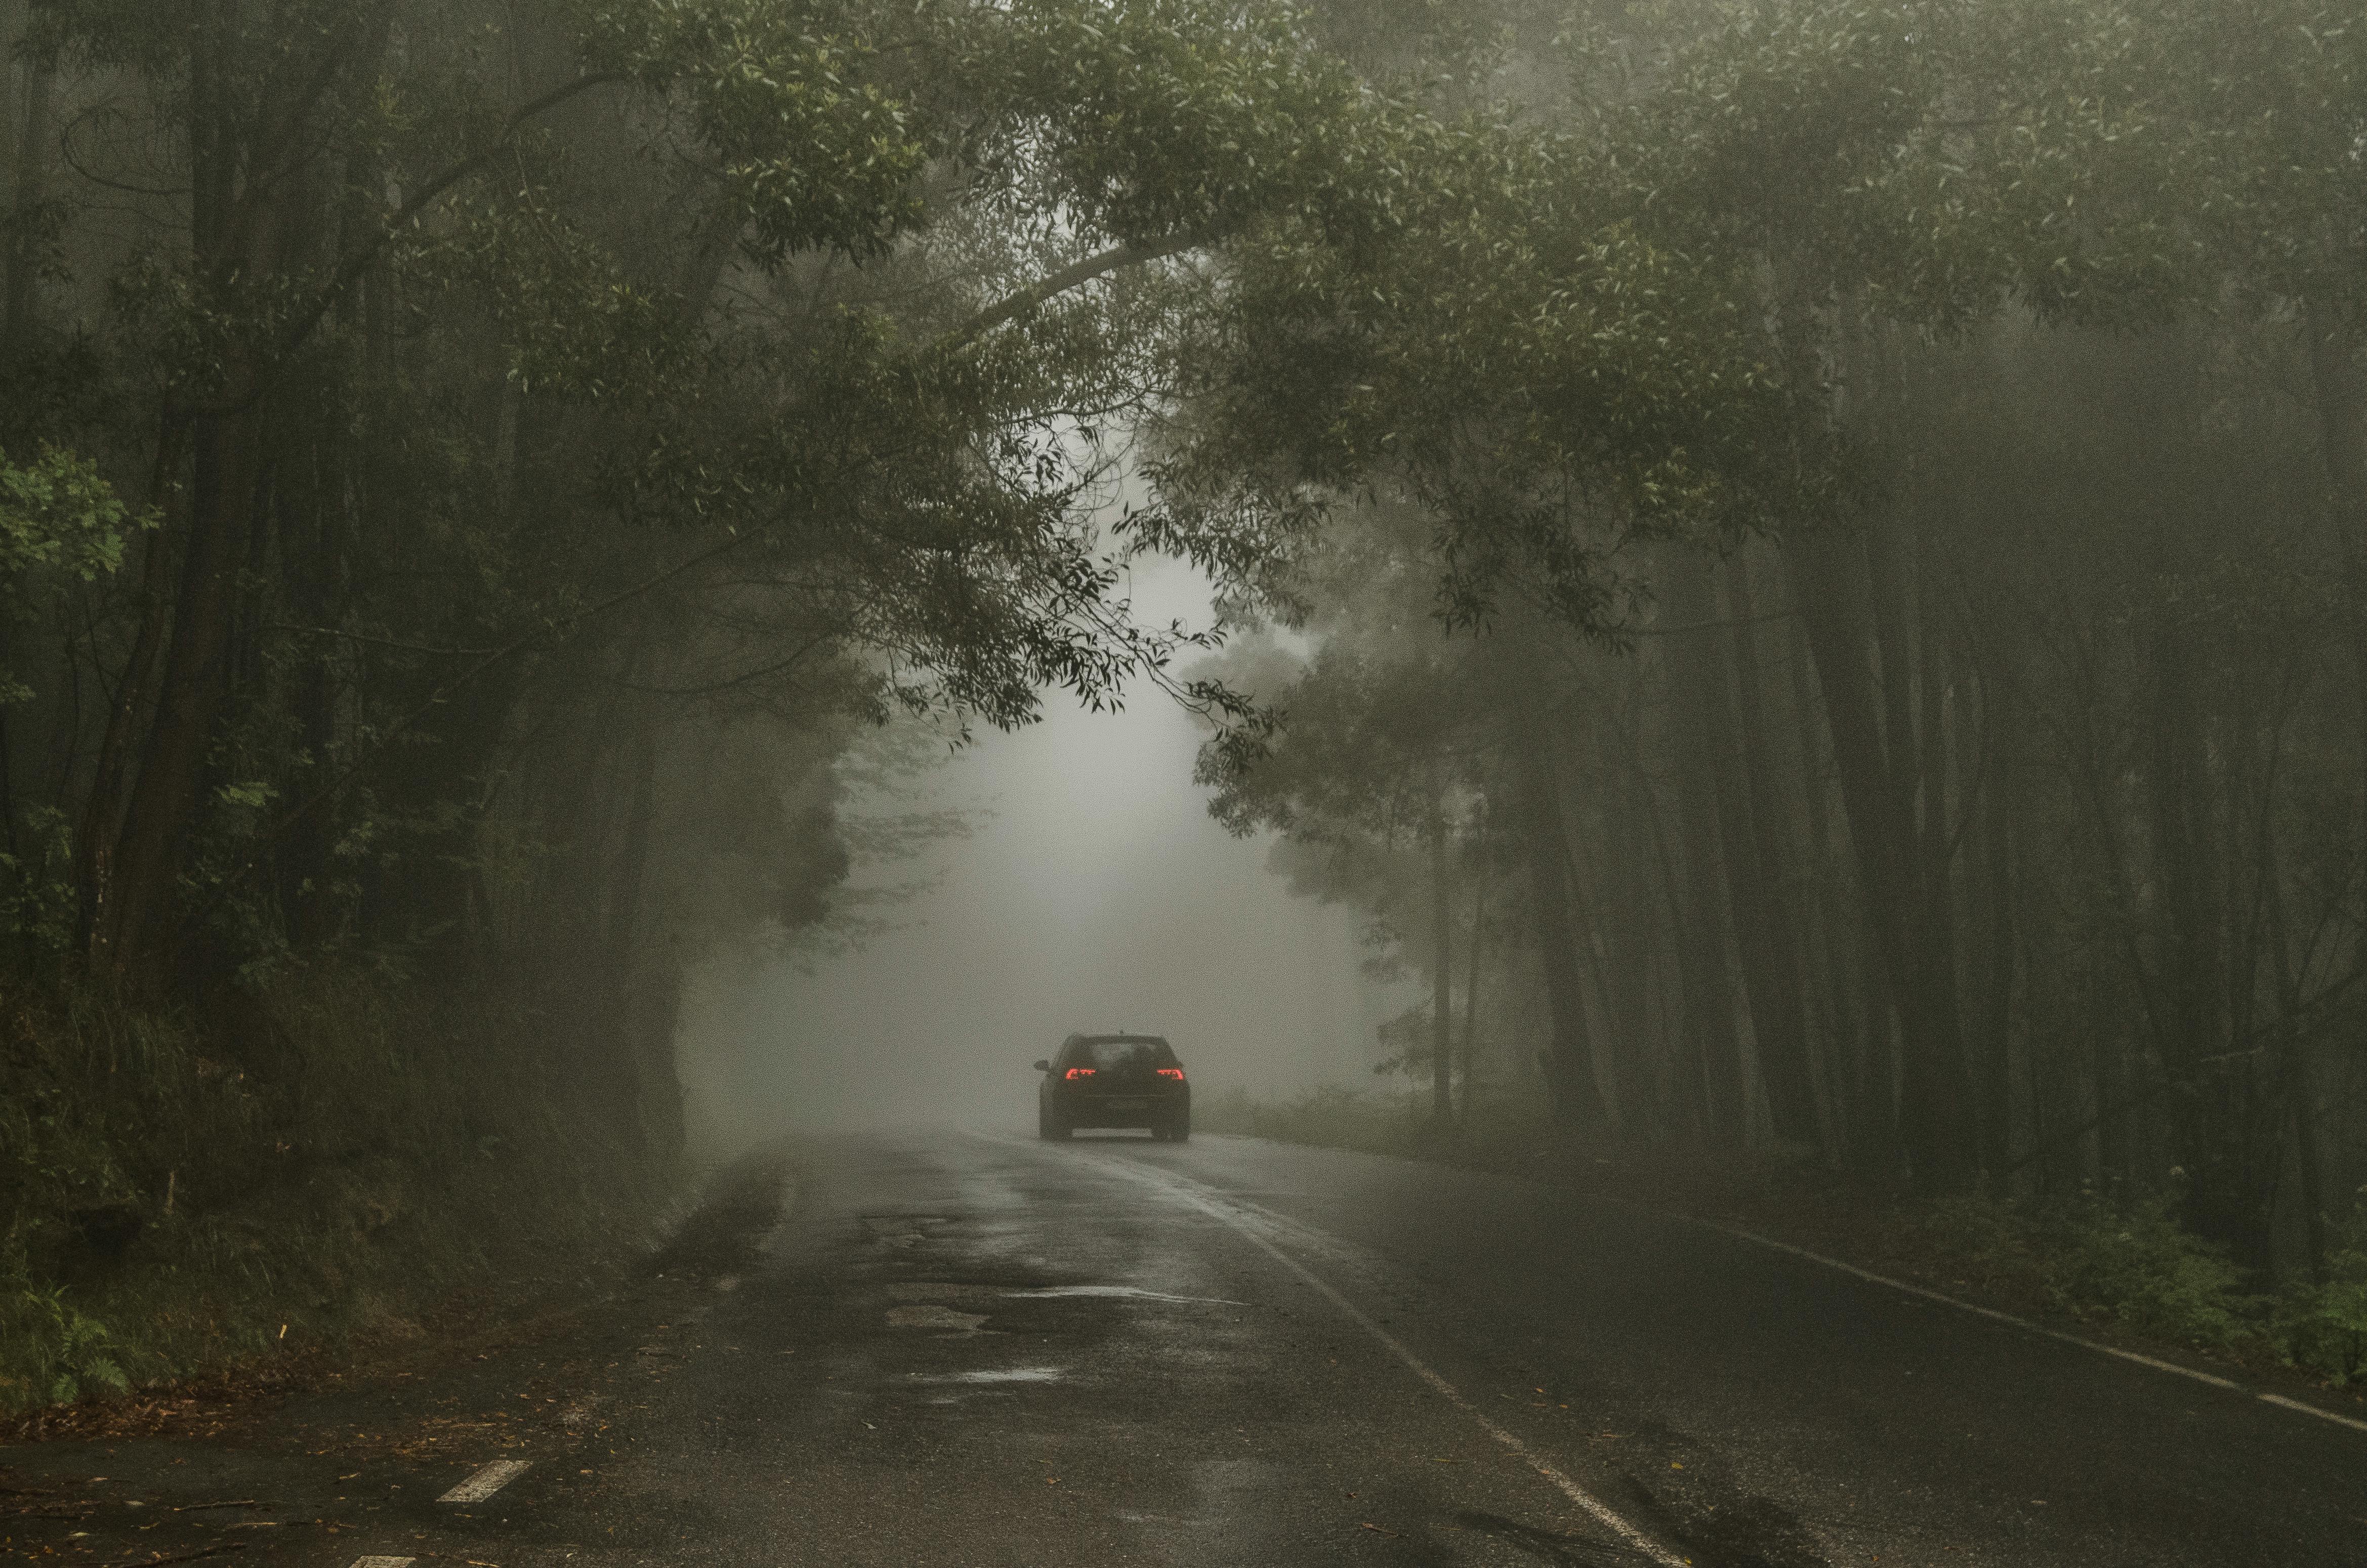 Une voiture en train de rouler en pleine forêt | Source : Pexels